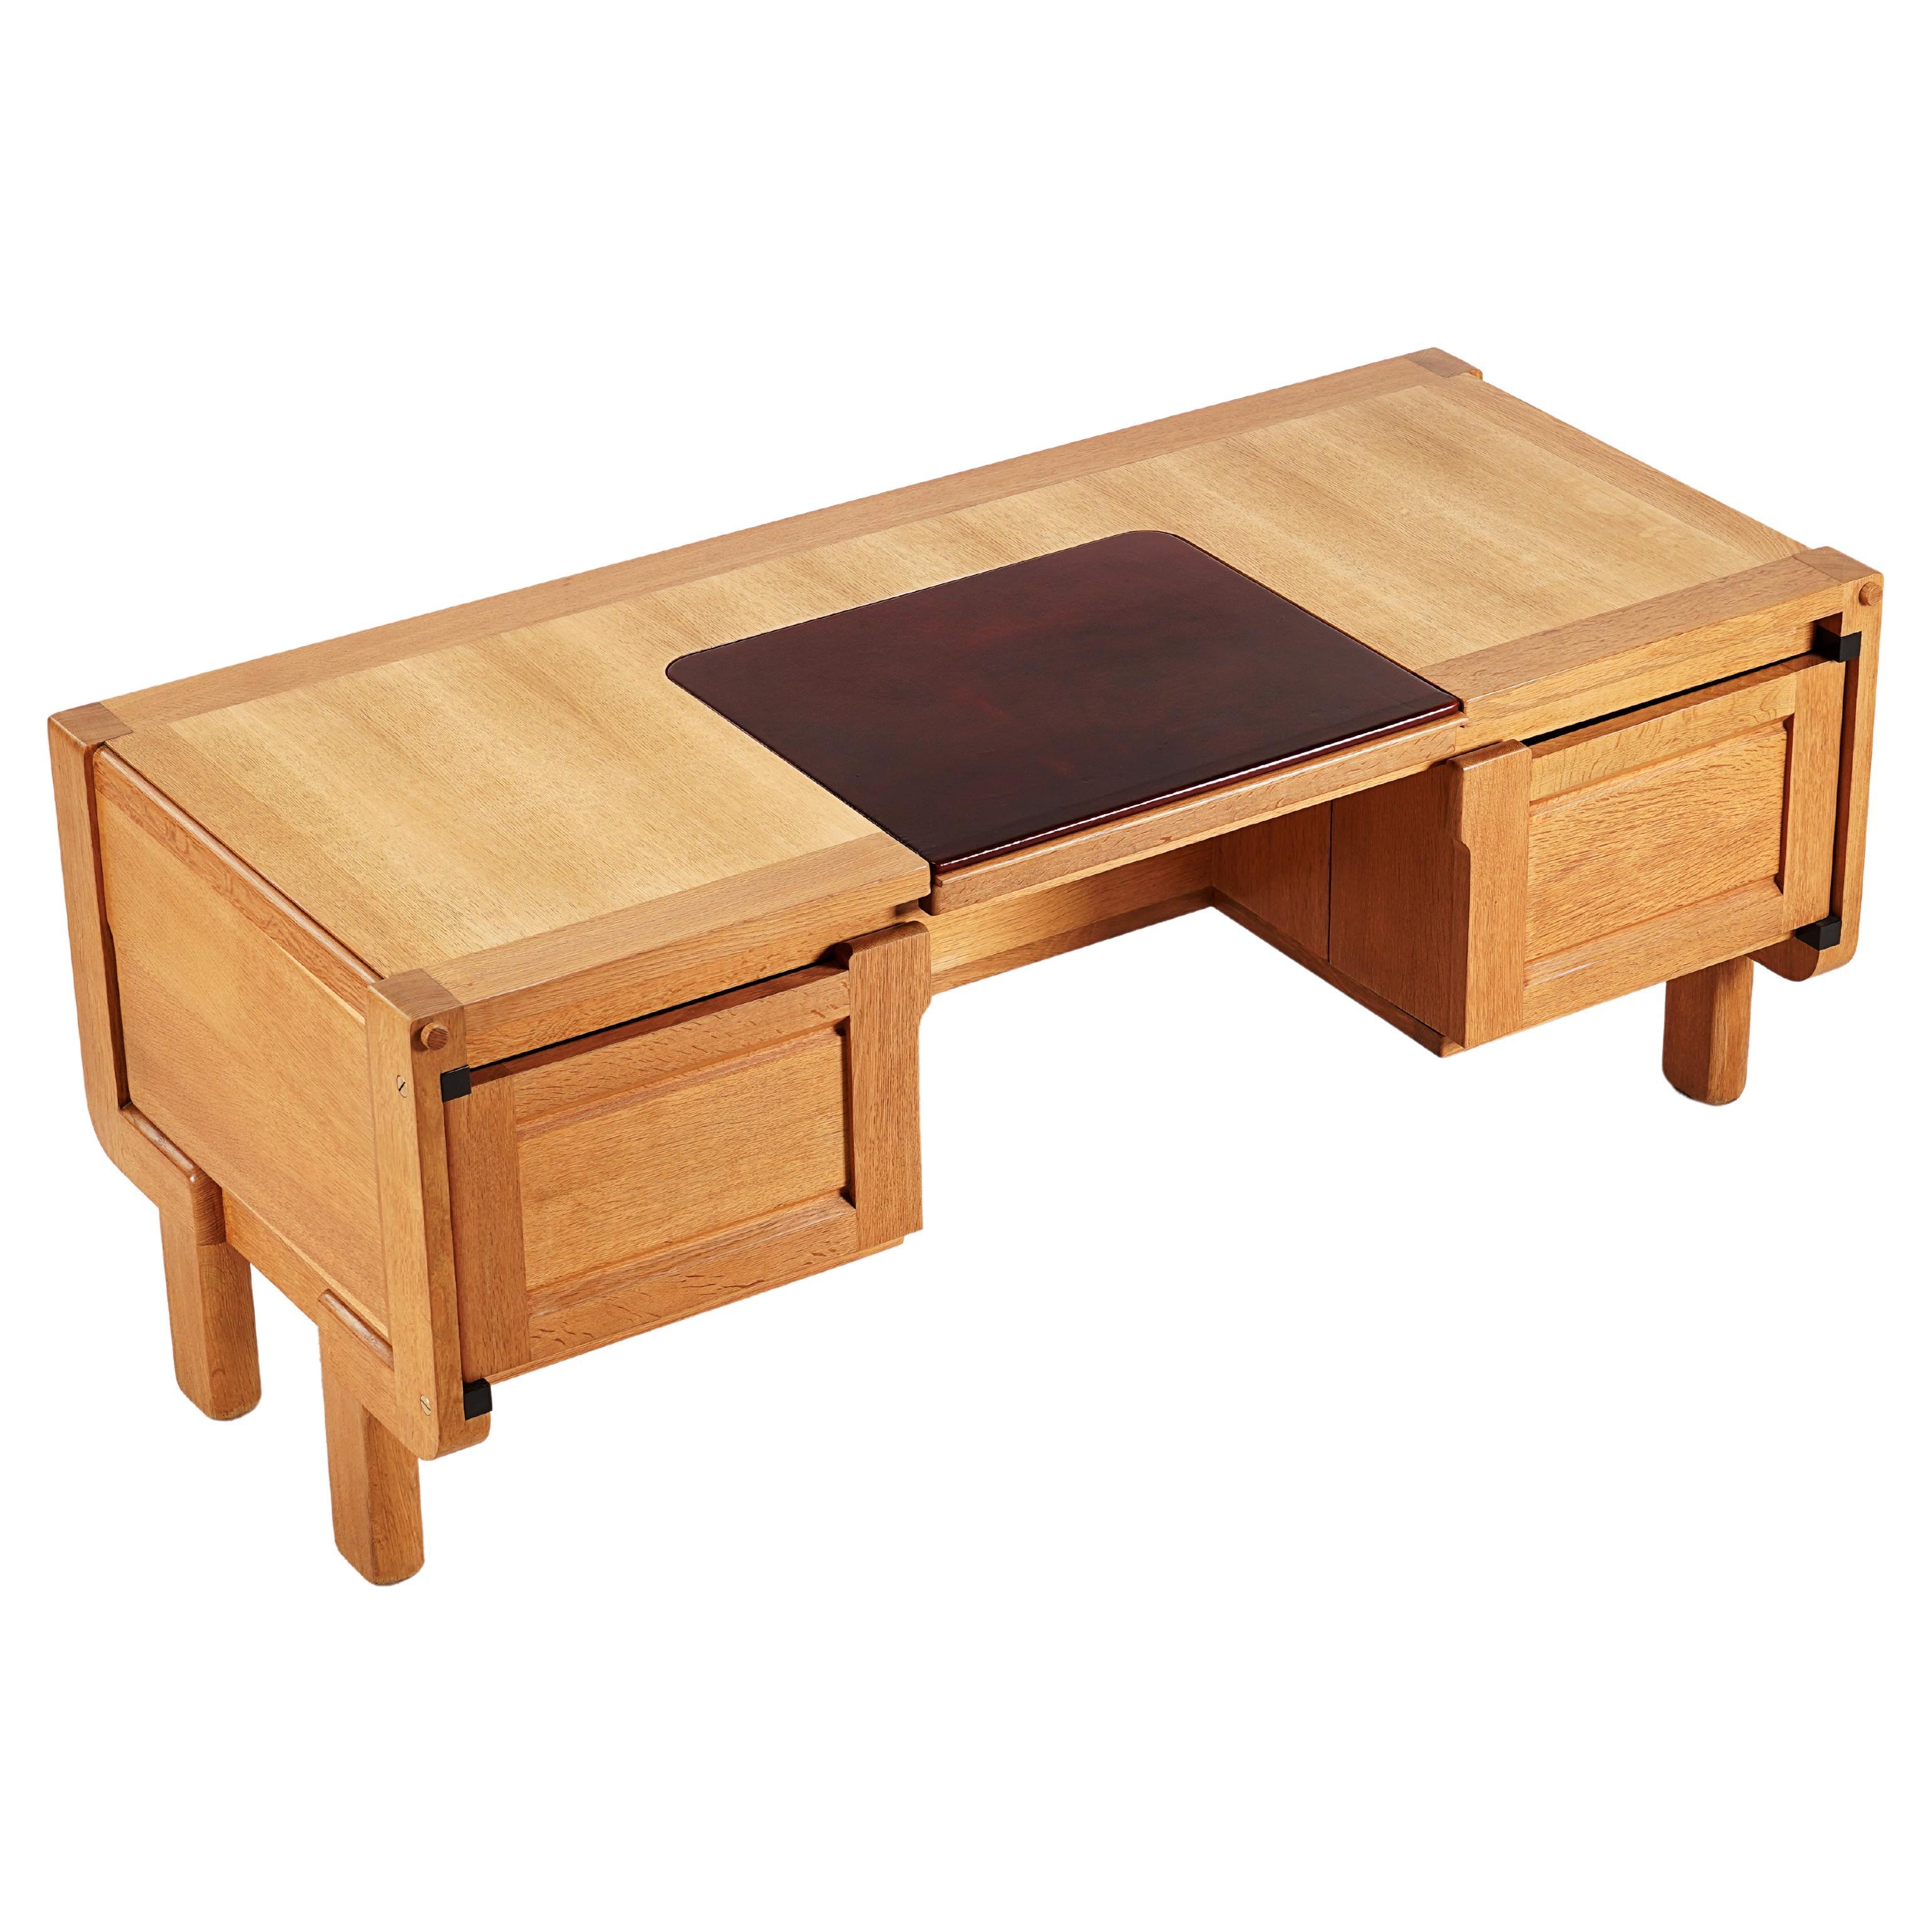 Guillerme & Chambron, Rare Oak Desk Model "Matignon" for Votre Maison", 1960. For Sale